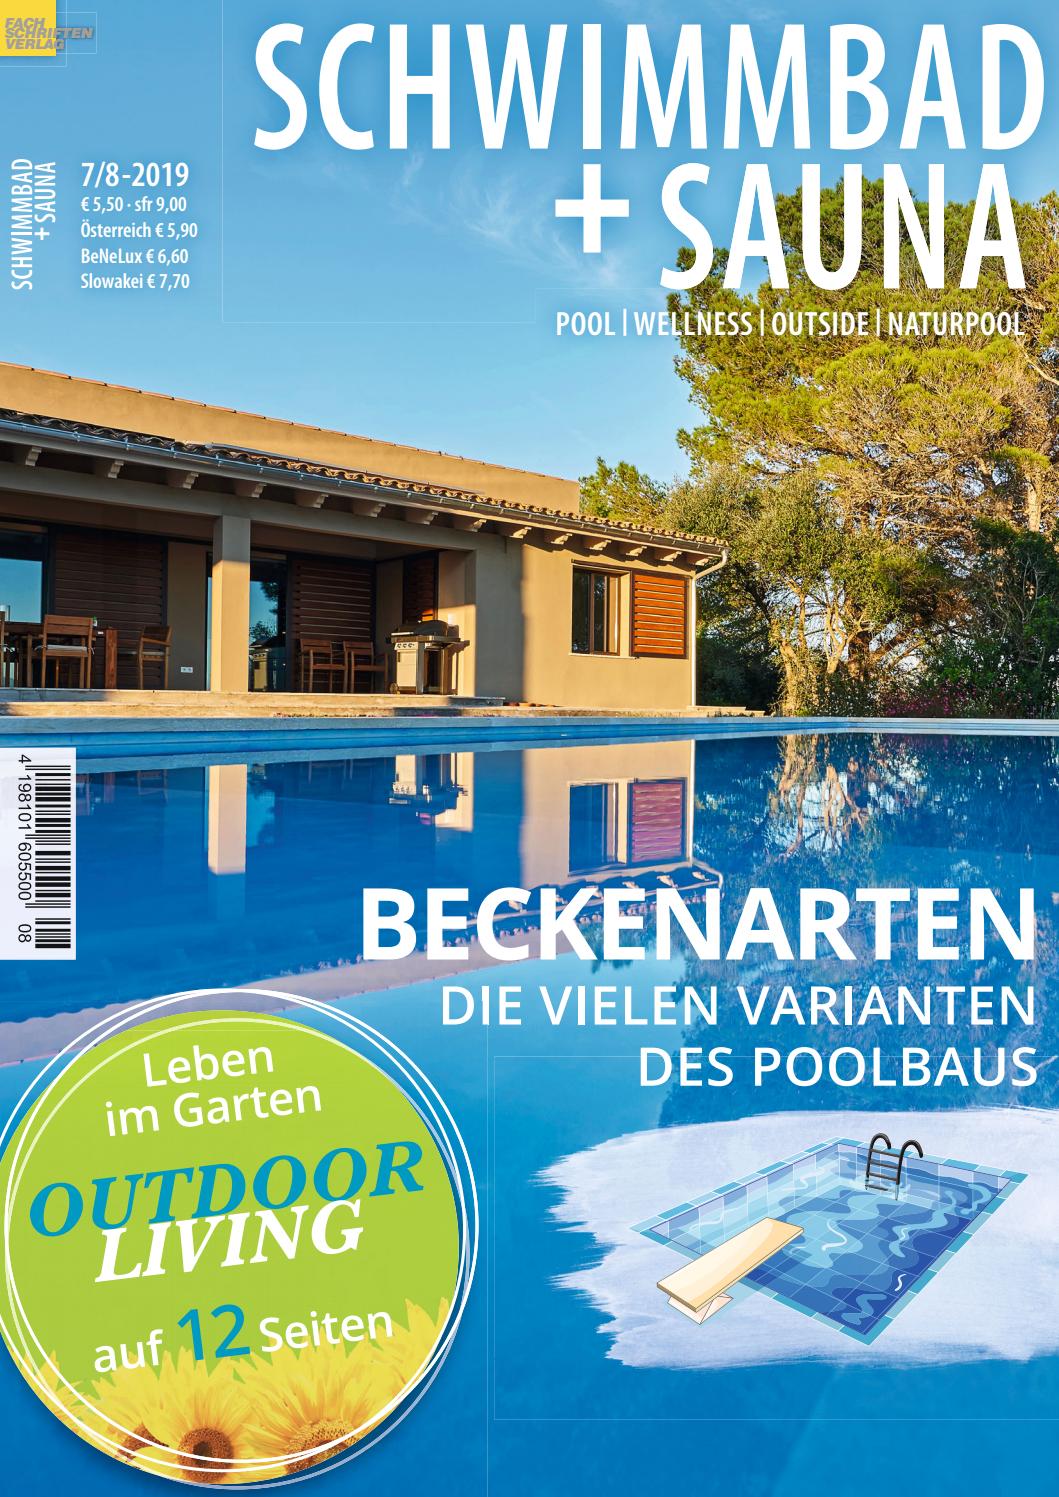 Englischer Garten Surfen Genial Schwimmbad Sauna 7 8 2019 by Fachschriften Verlag issuu